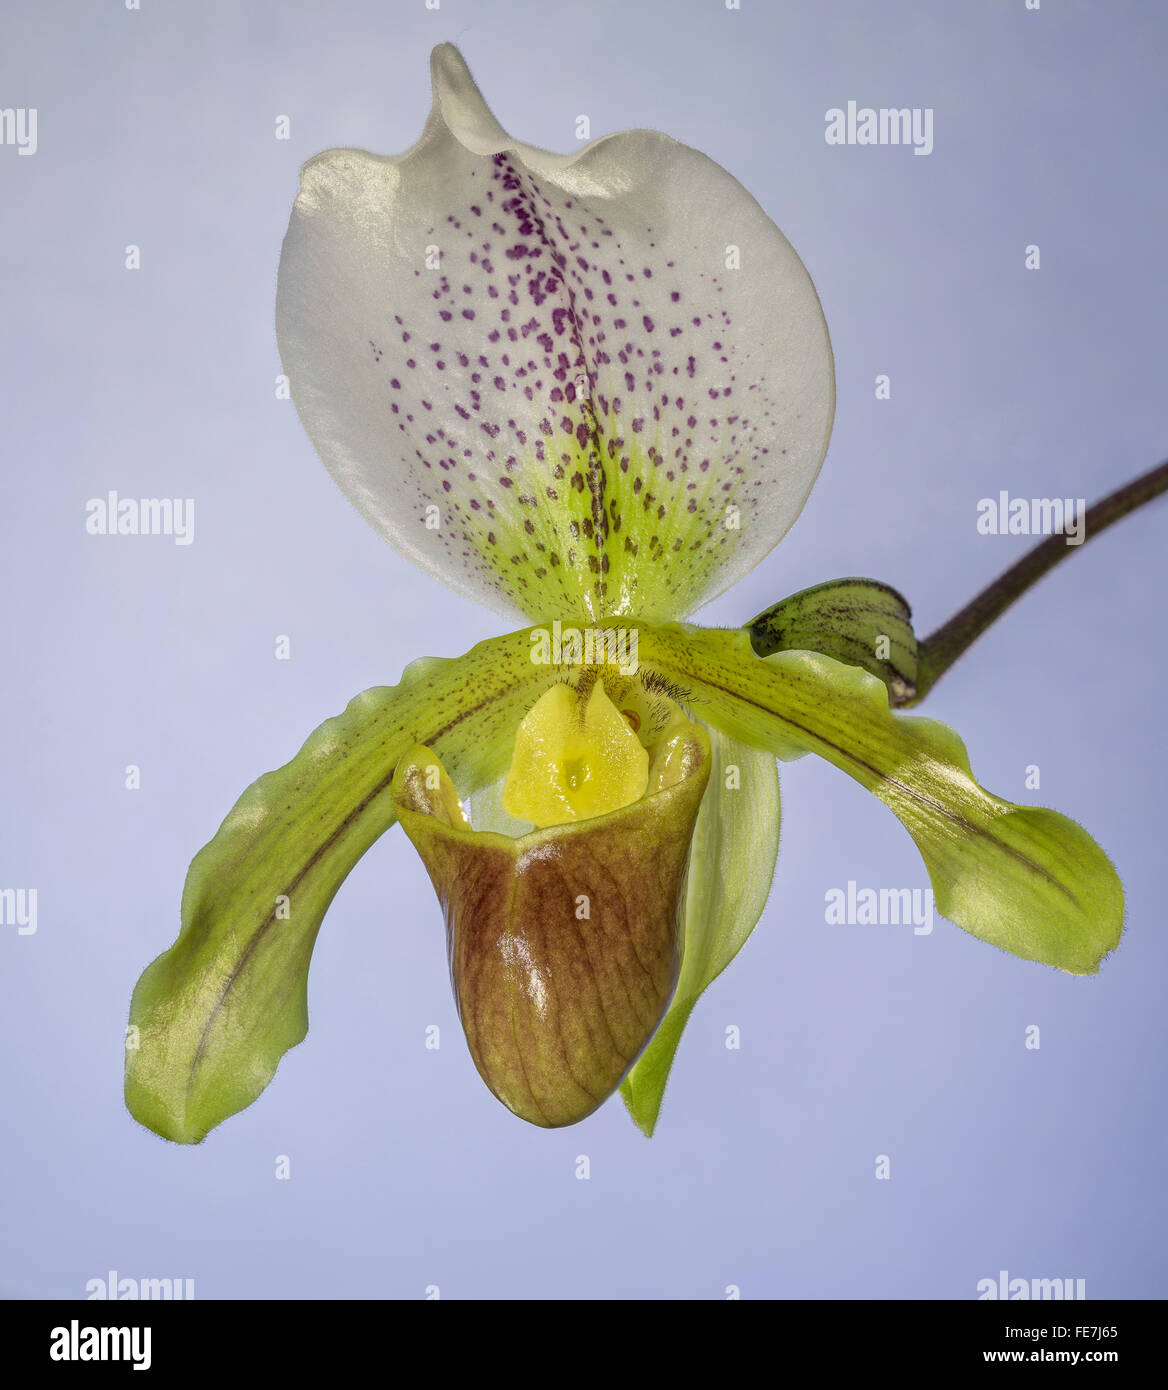 Venus slipper orchid (Paphiopedilum) Stock Photo